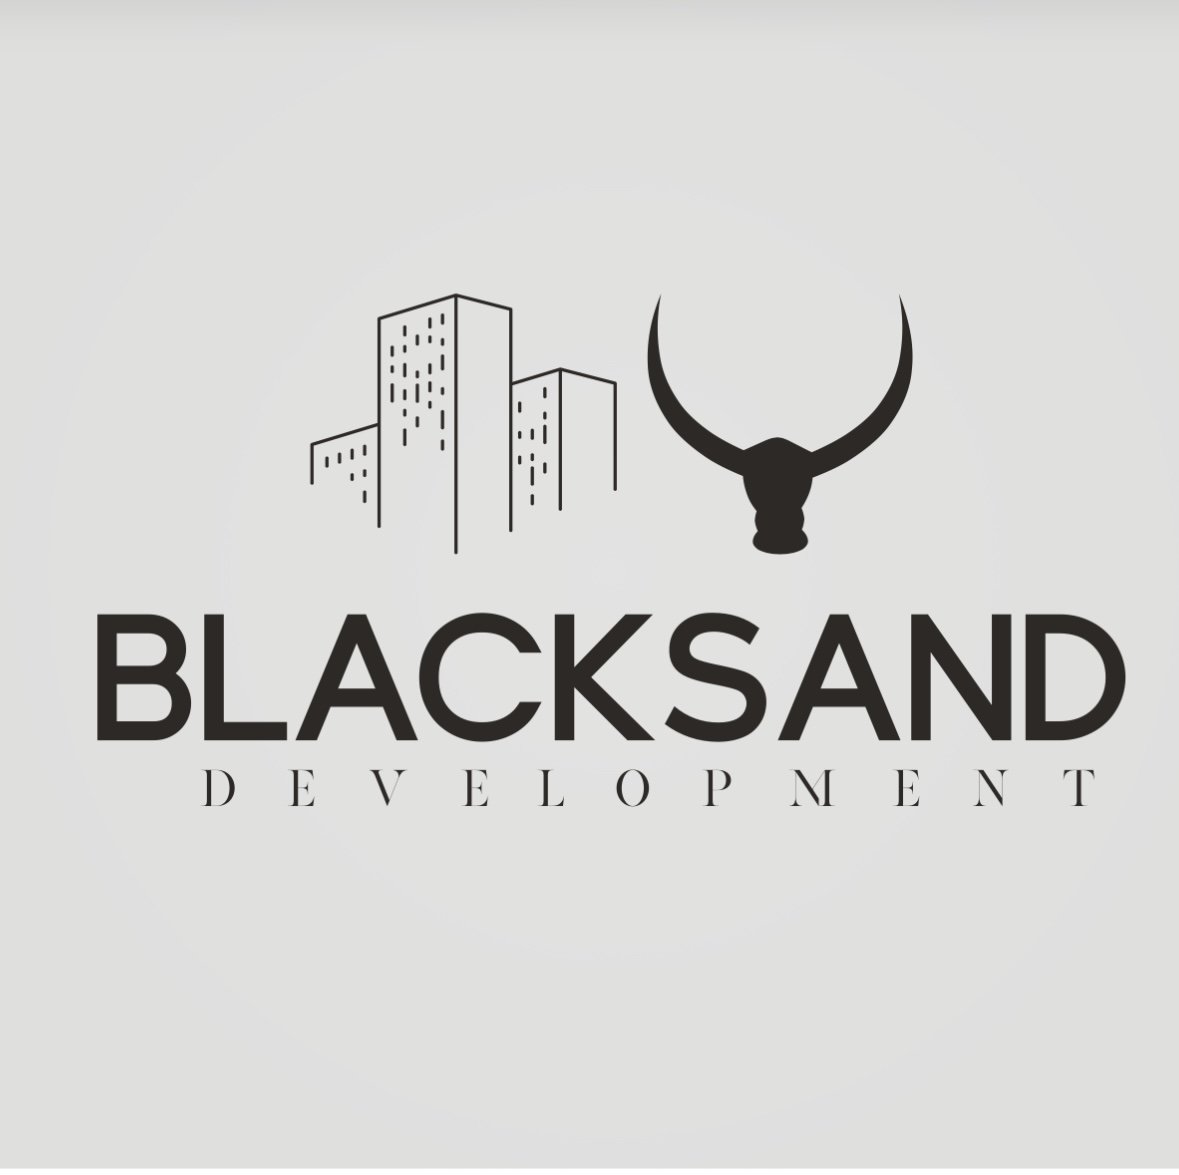 BlackSand Development